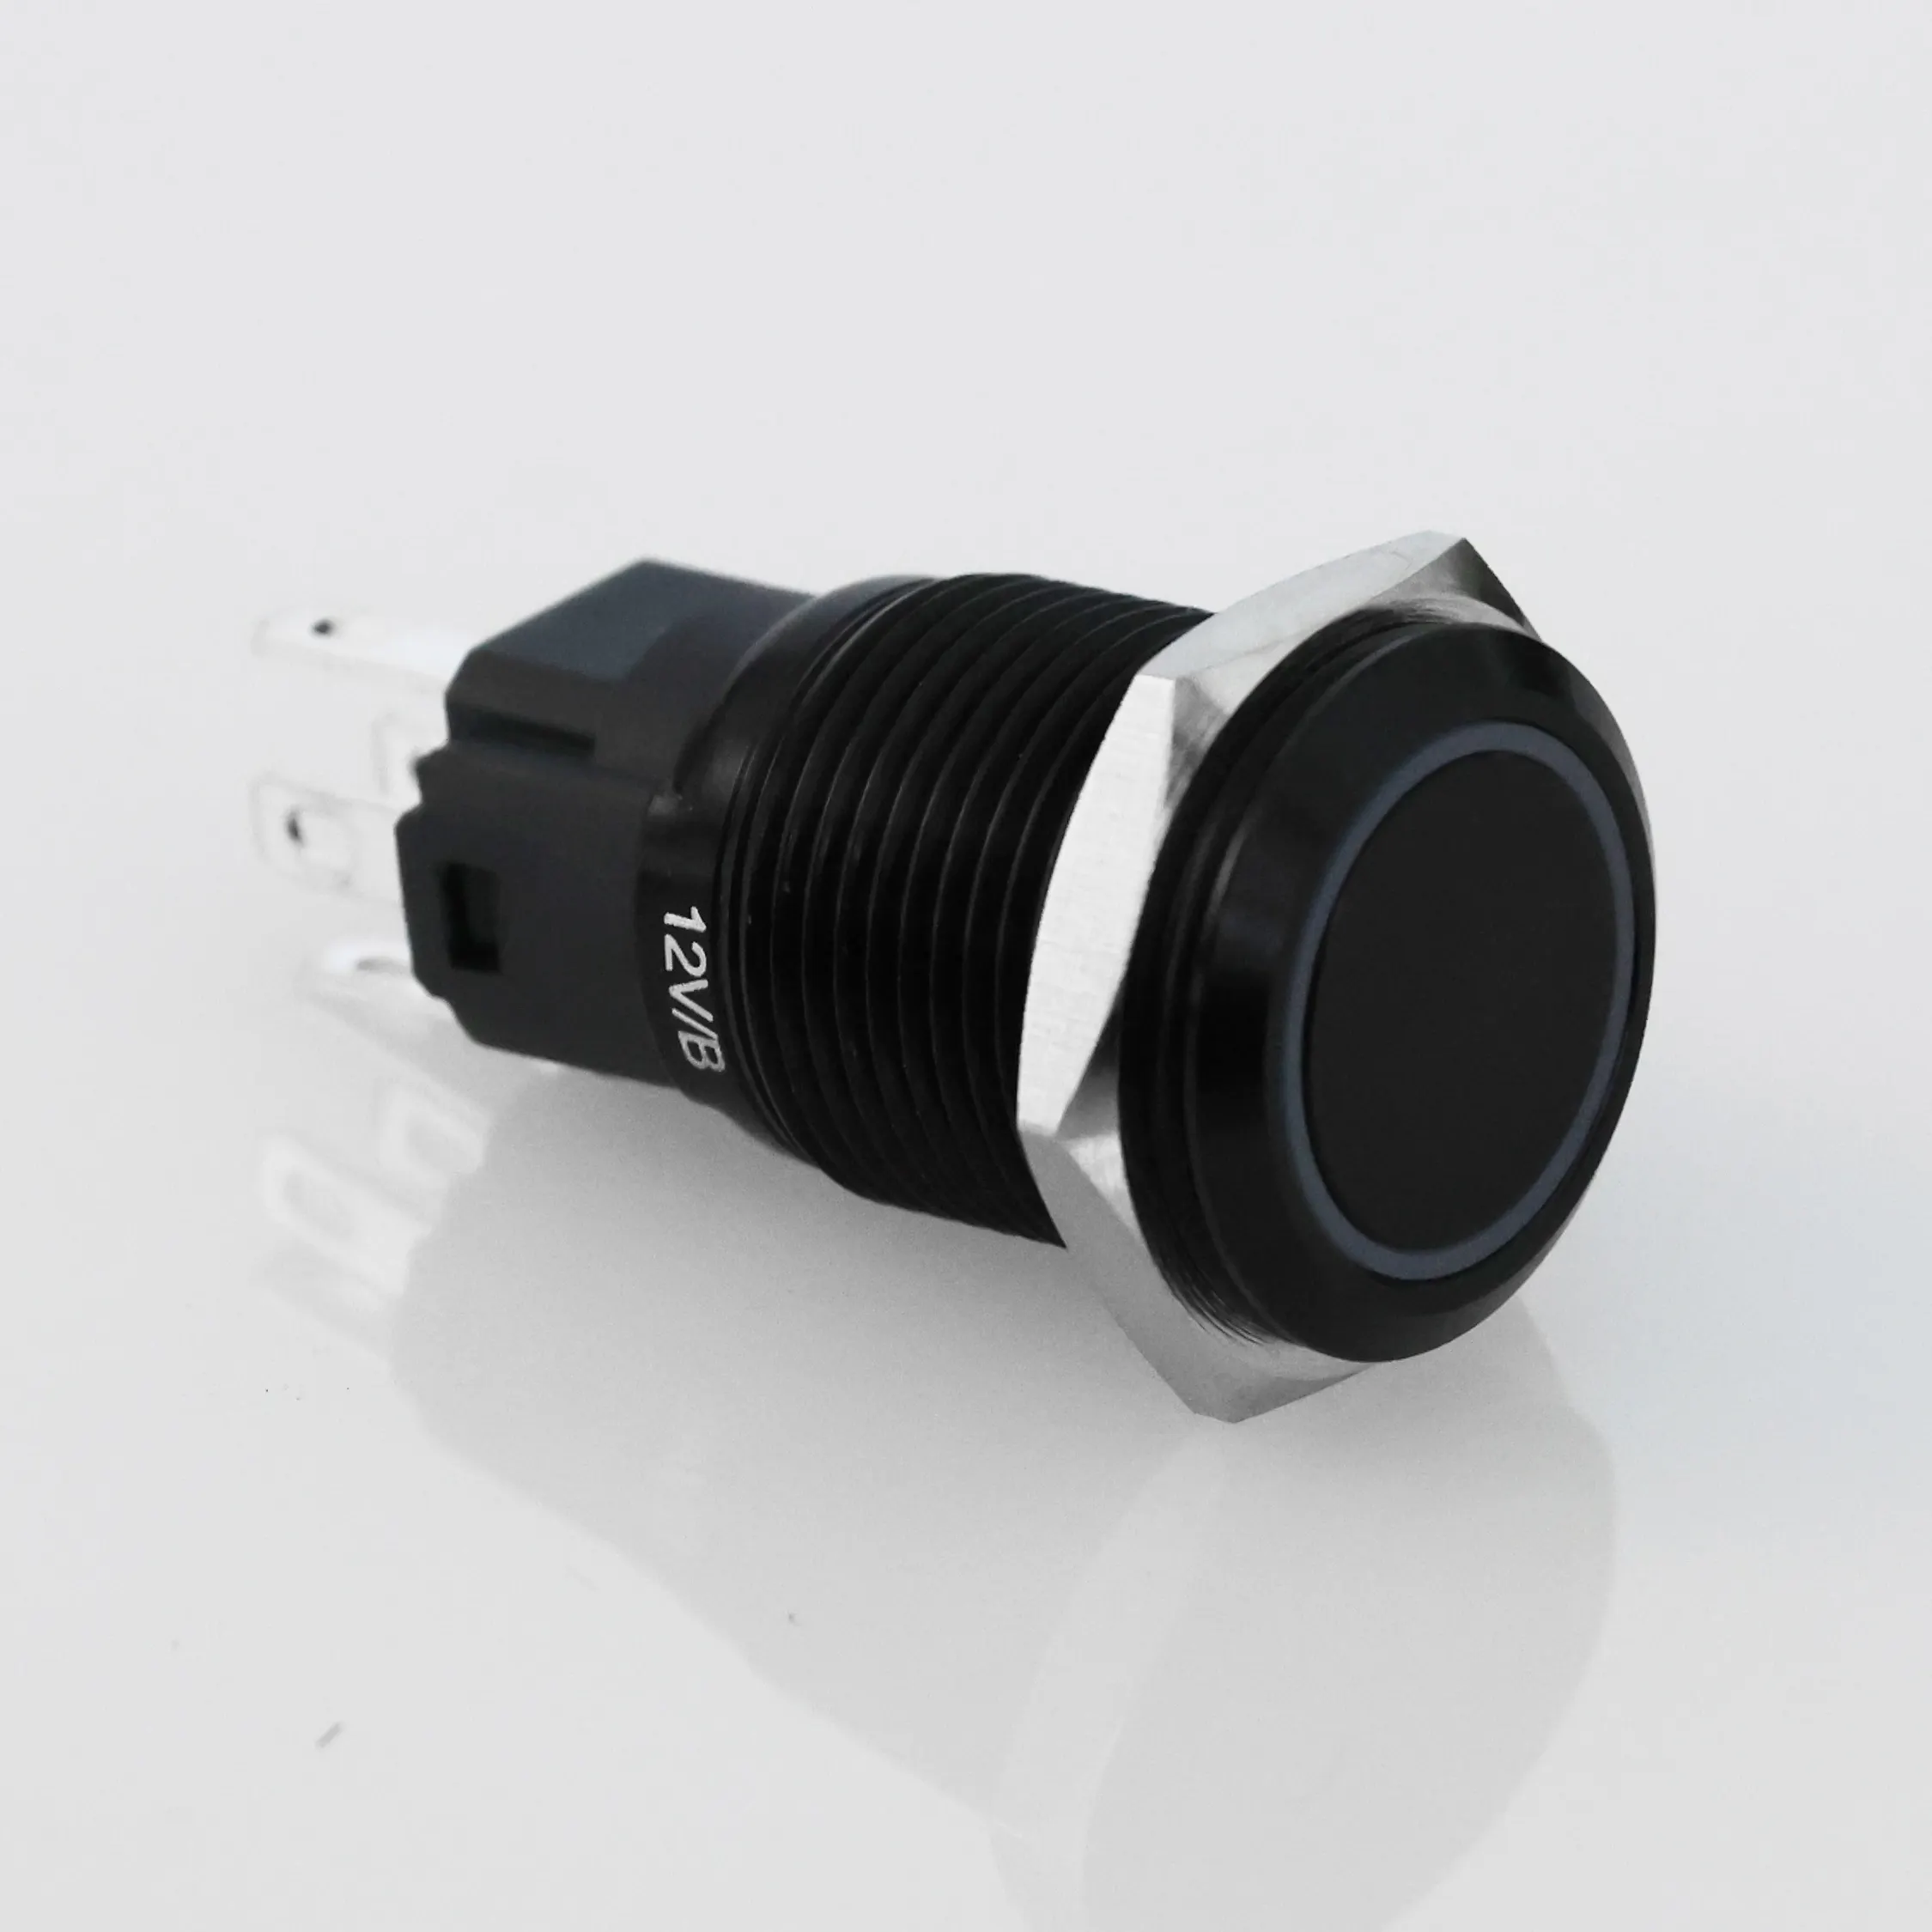 Langir 16mm 12v LED Botão de metal Interruptor do painel Símbolo personalizado Interruptor de corrida de carro momentâneo liga/desliga